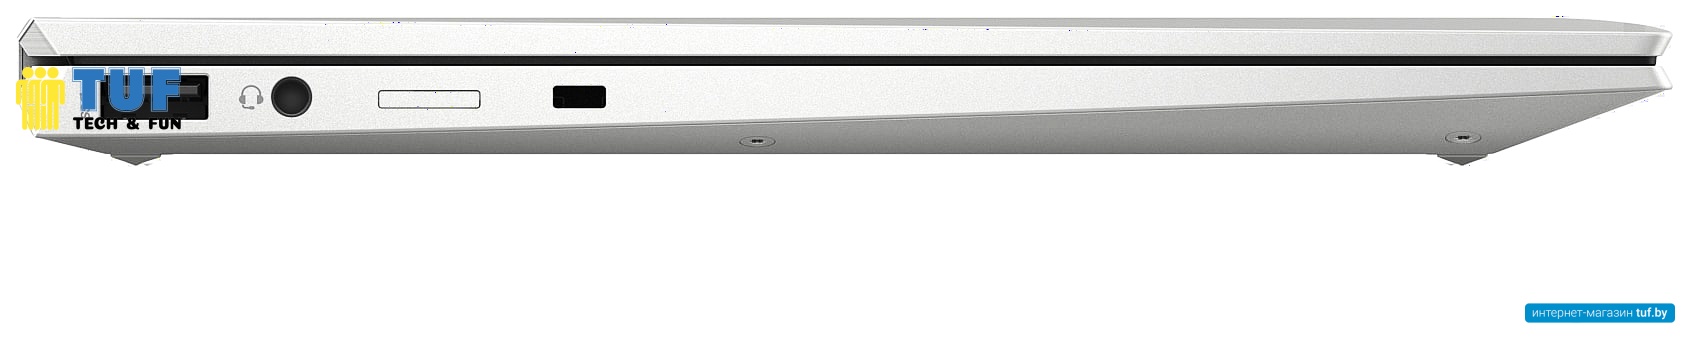 Ноутбук 2-в-1 HP EliteBook x360 1030 G8 3C8H4EA